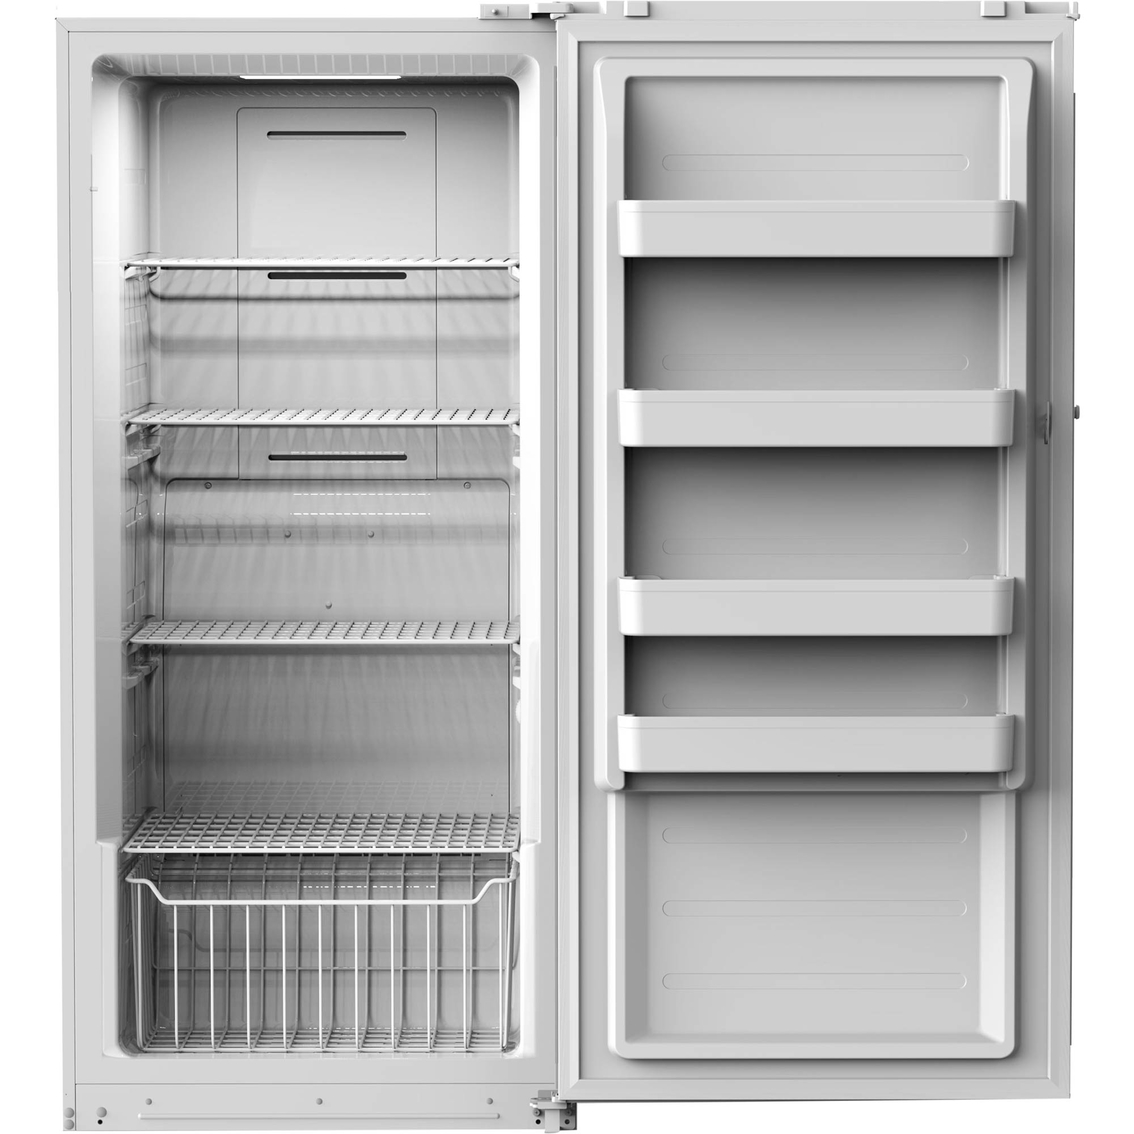 Midea 14 Cu Ft Upright Freezer Freezers Furniture And Appliances